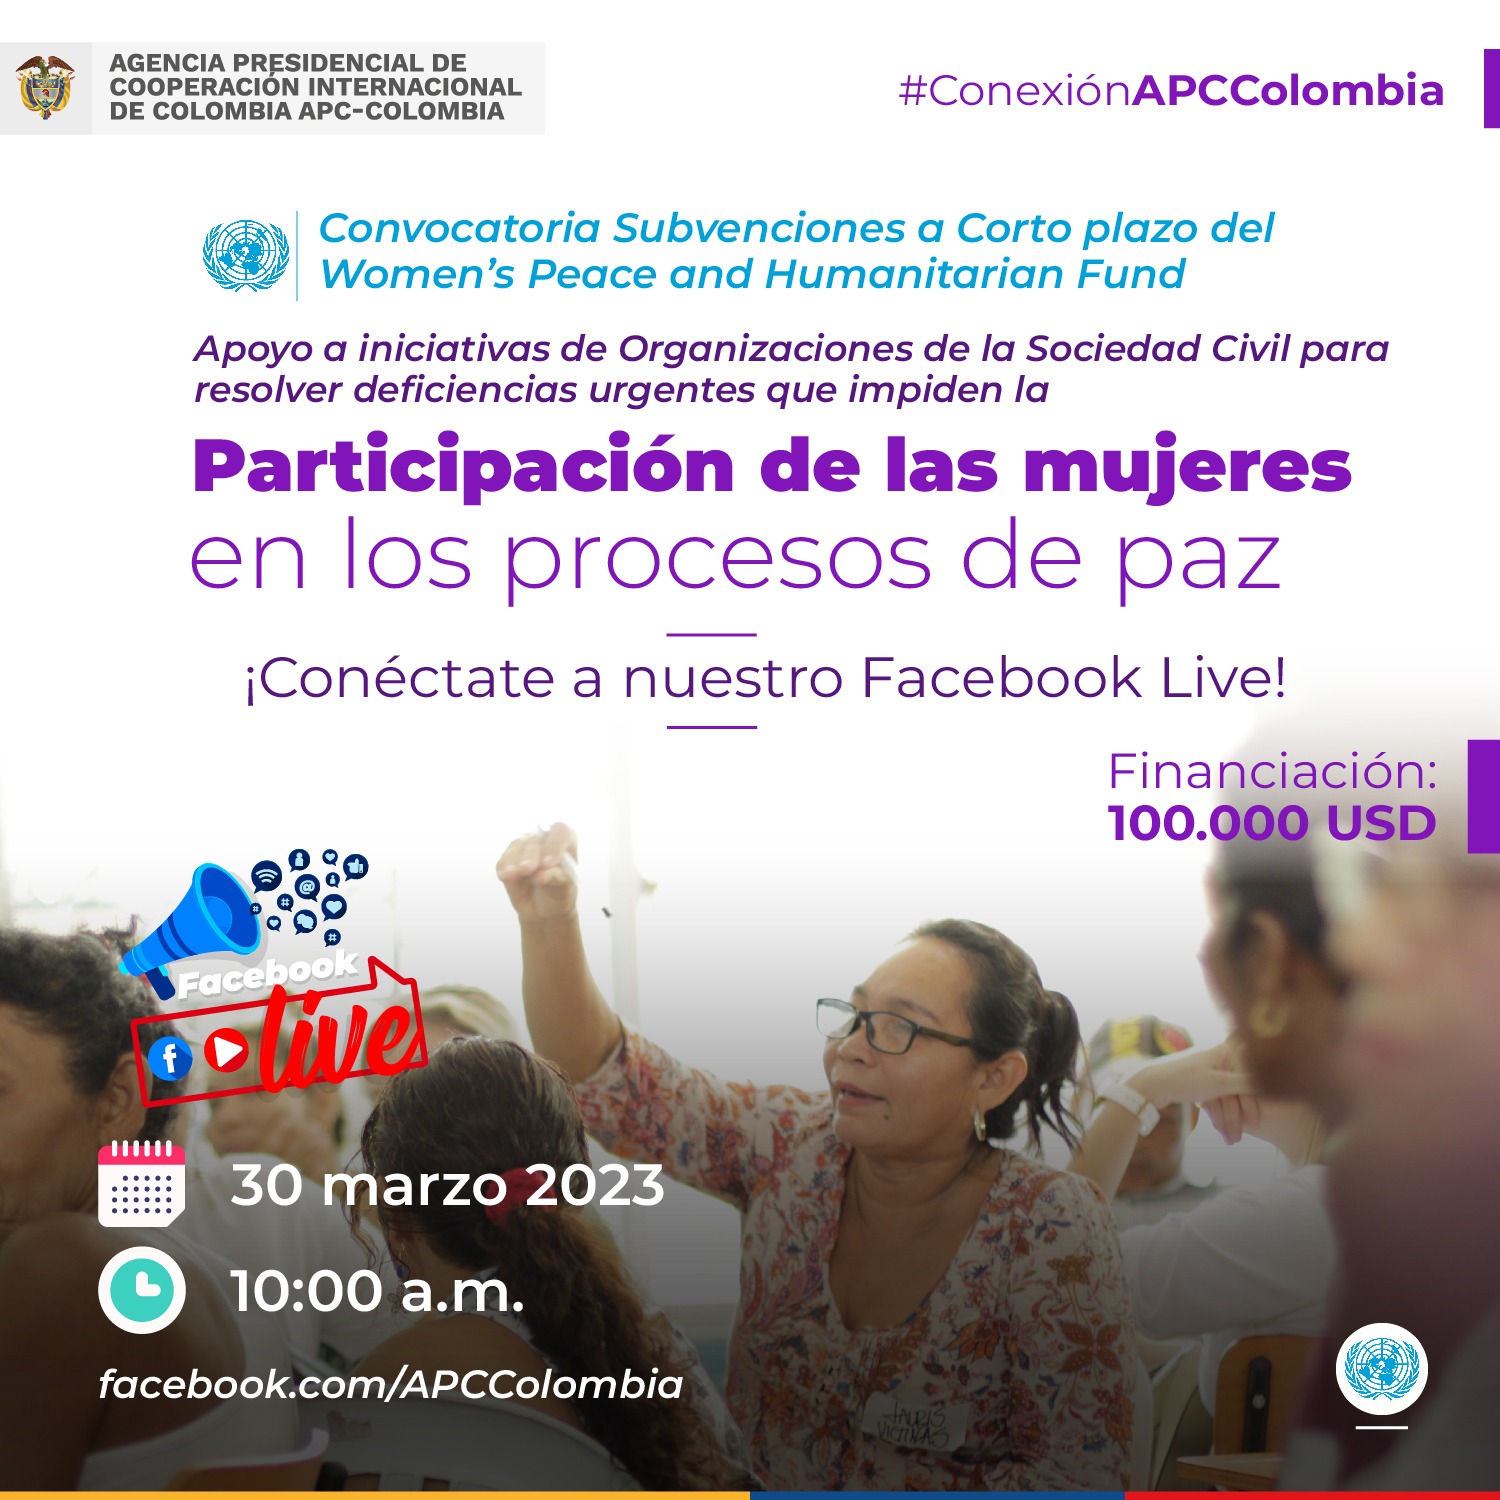 Facebook Live el 30 de marzo a las diez convocatoria de la ONU la promover la participación de las mujeres en procesos de paz